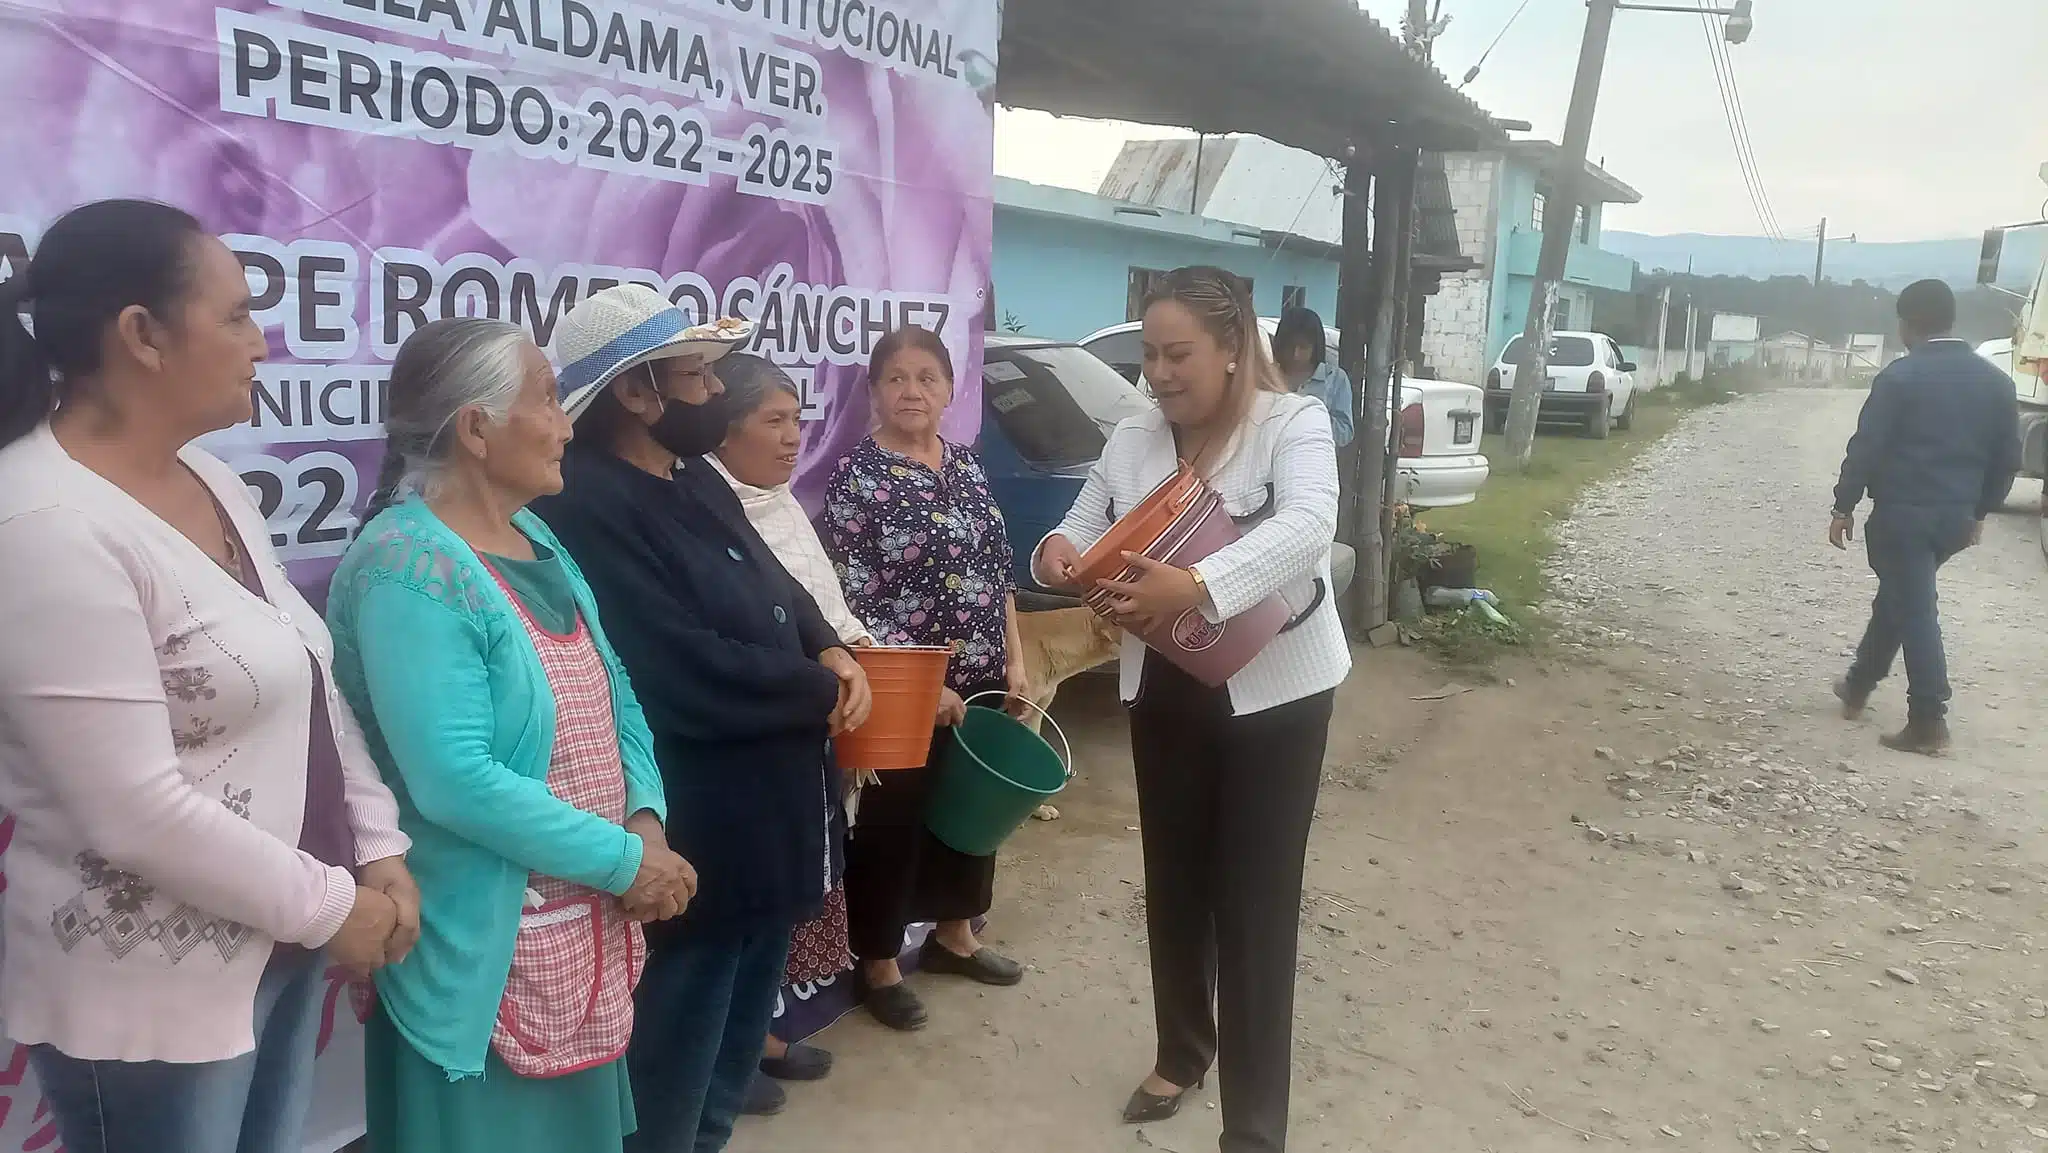 ¡Indignación! Se viraliza alcaldesa que regaló cubetas por el Día de las Madres